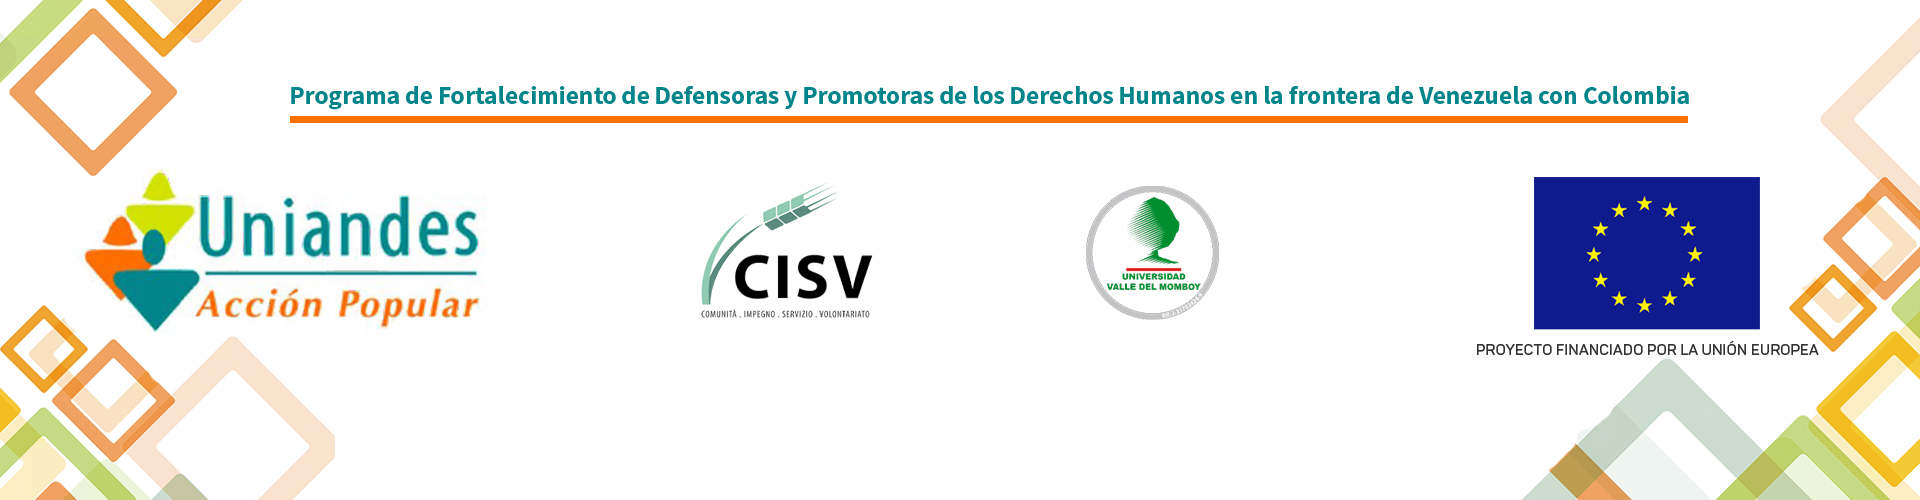 Programa por Amavisión en alianza con la Defensoría del Pueblo para tratar el estado de los Servicios Públicos